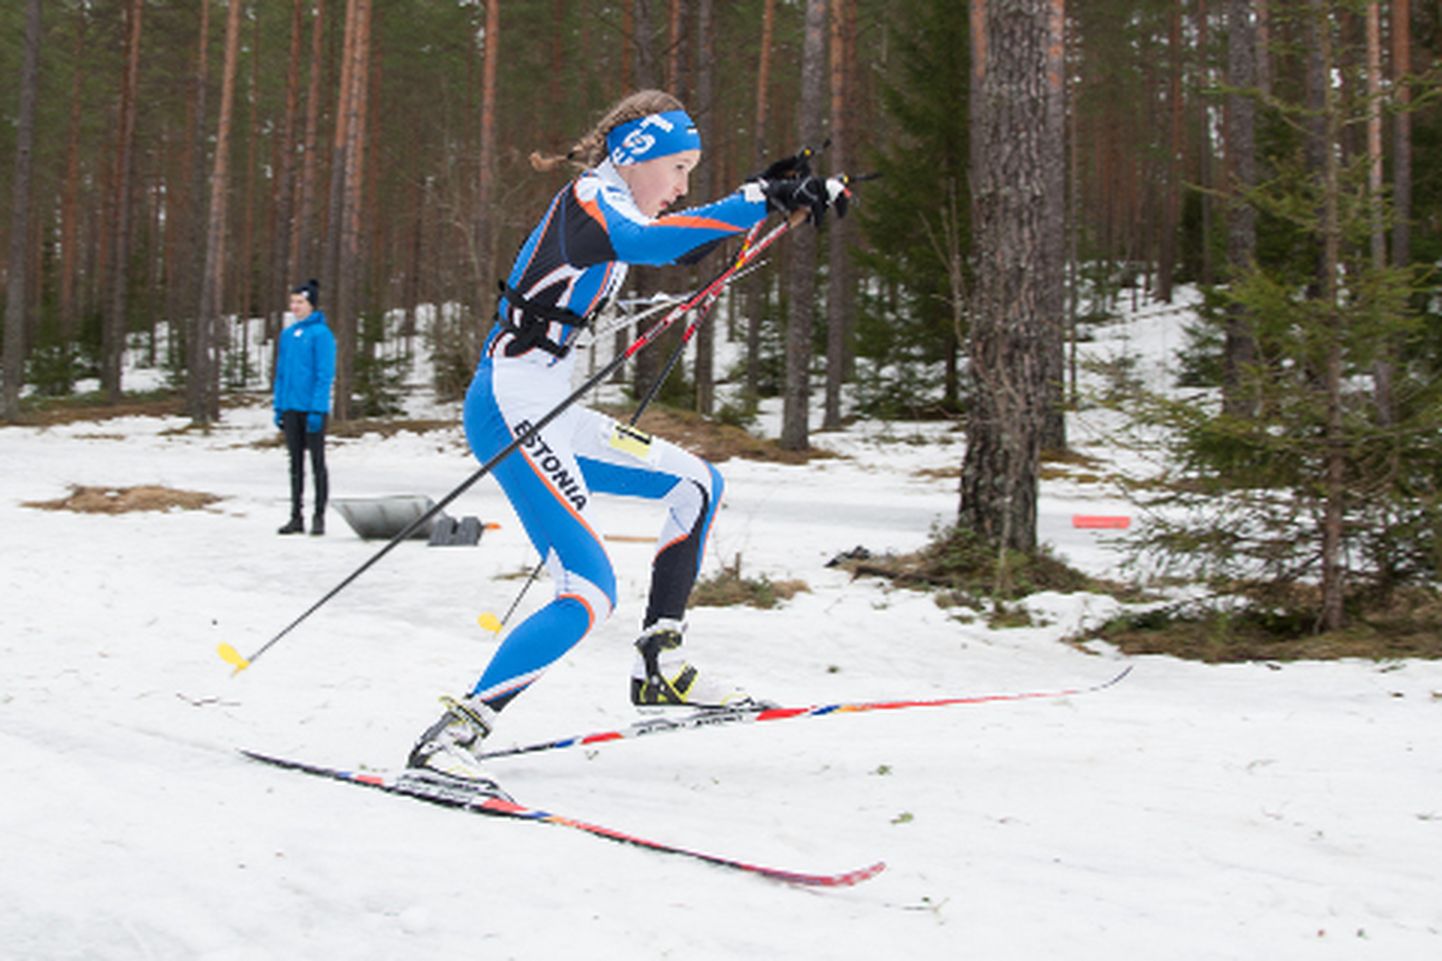 15aastane Rakvere neiu Kaisa Rooba lausa lendab jäisel rajal võiduka finiši poole - tema kullavõit oli avapäeval Eesti koondisele suur meeldiv üllatus.